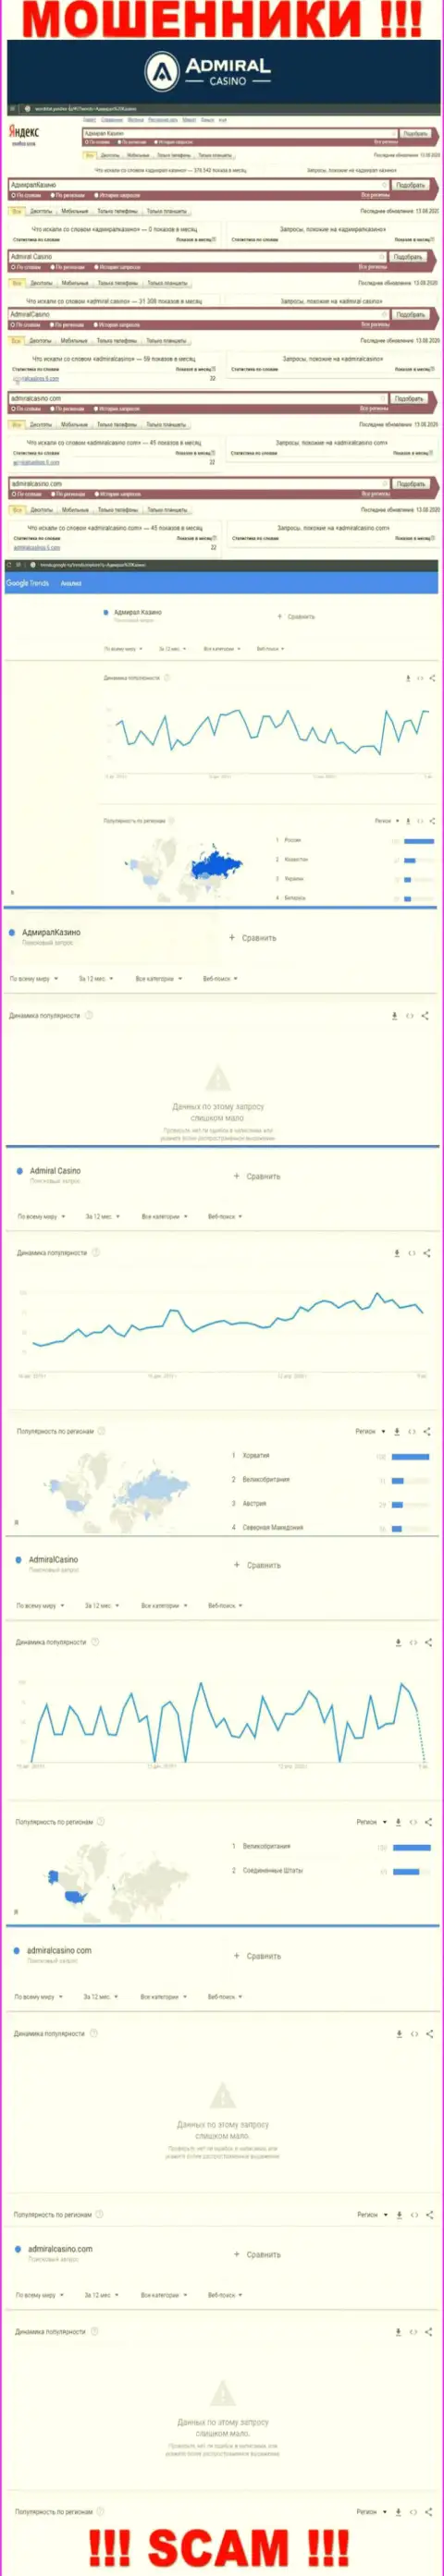 Сколько людей пытались разыскать материал о AdmiralCasino Com - статистика online запросов по указанной компании